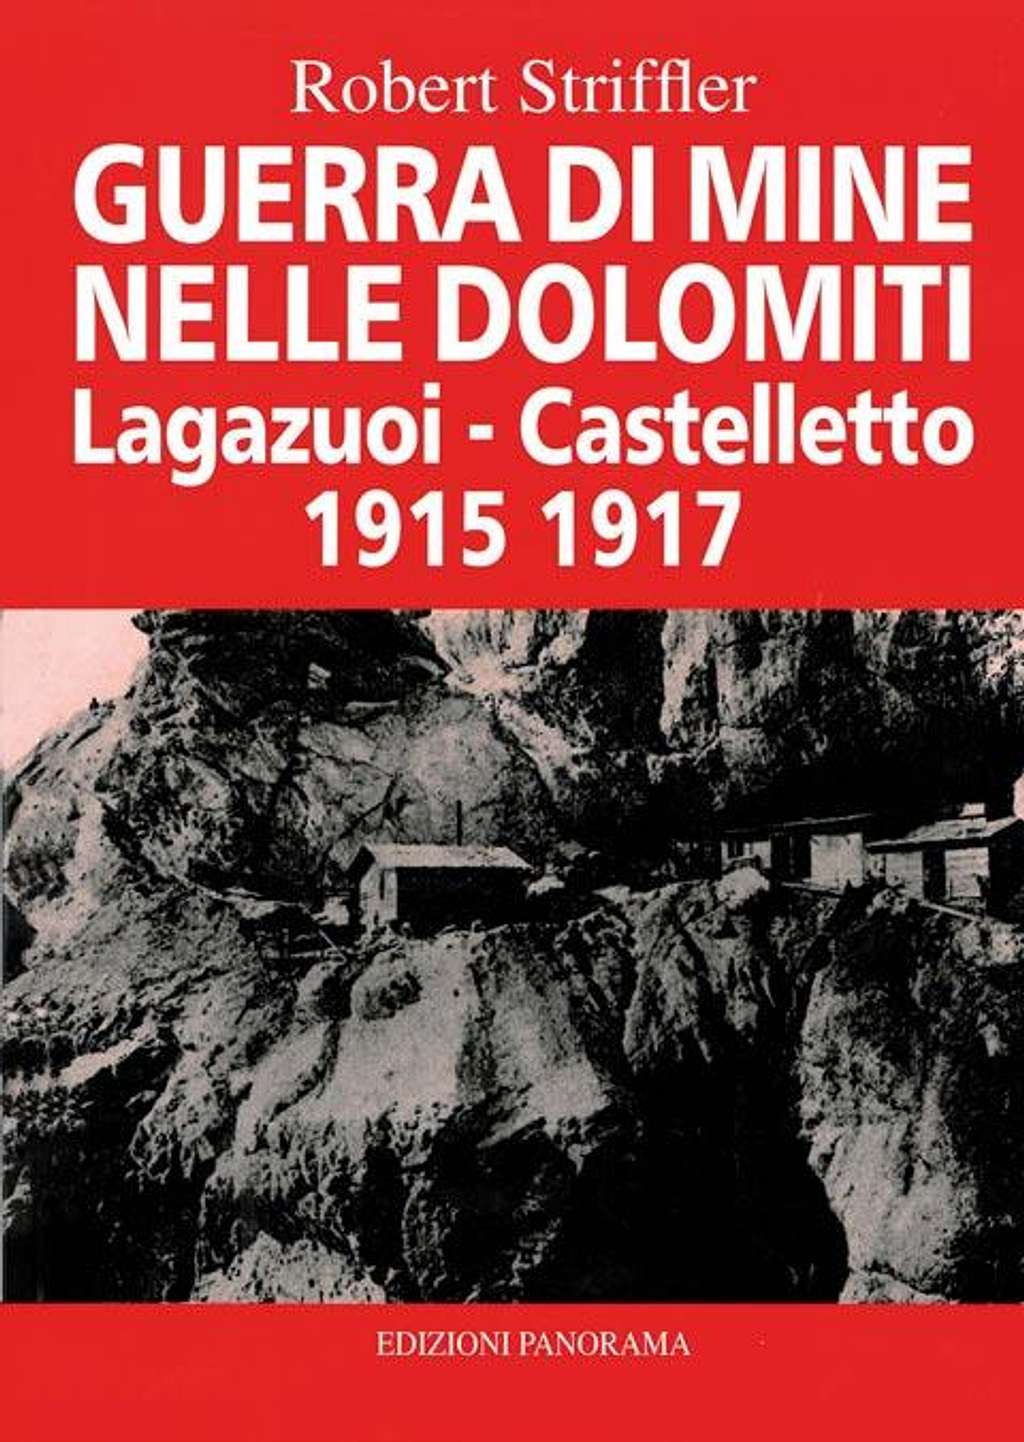 Guerra di mine nelle Dolomiti; Lagazuoi - Castelletto 1915-1917